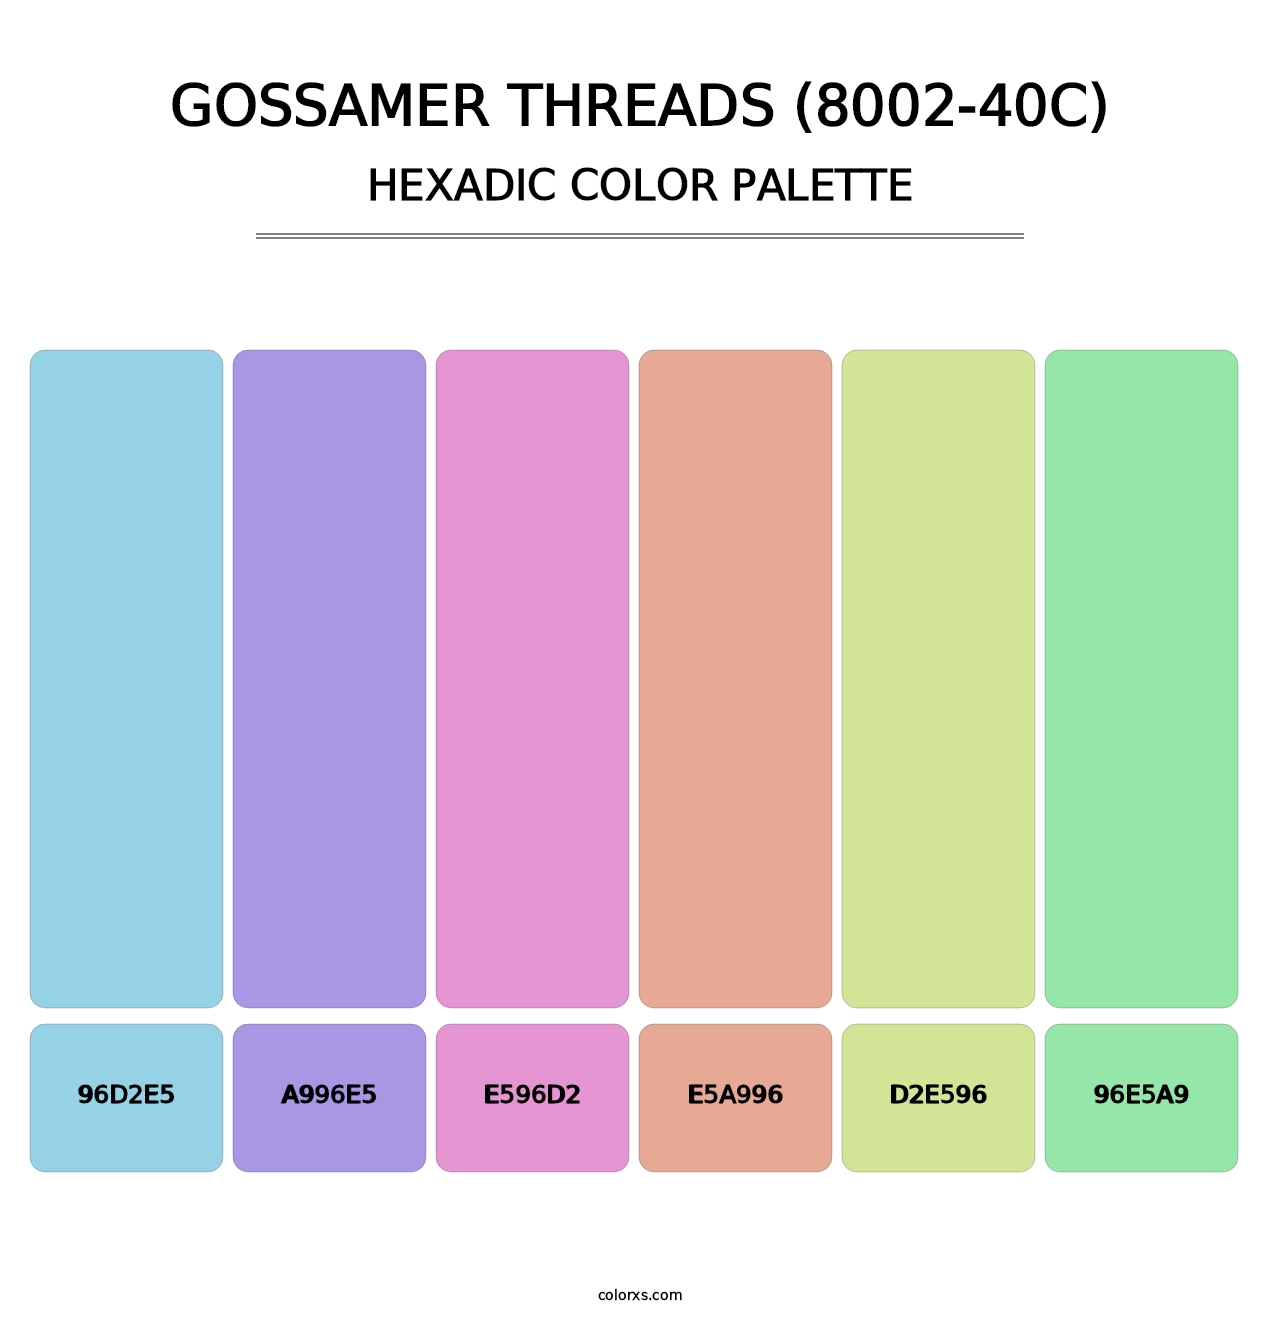 Gossamer Threads (8002-40C) - Hexadic Color Palette